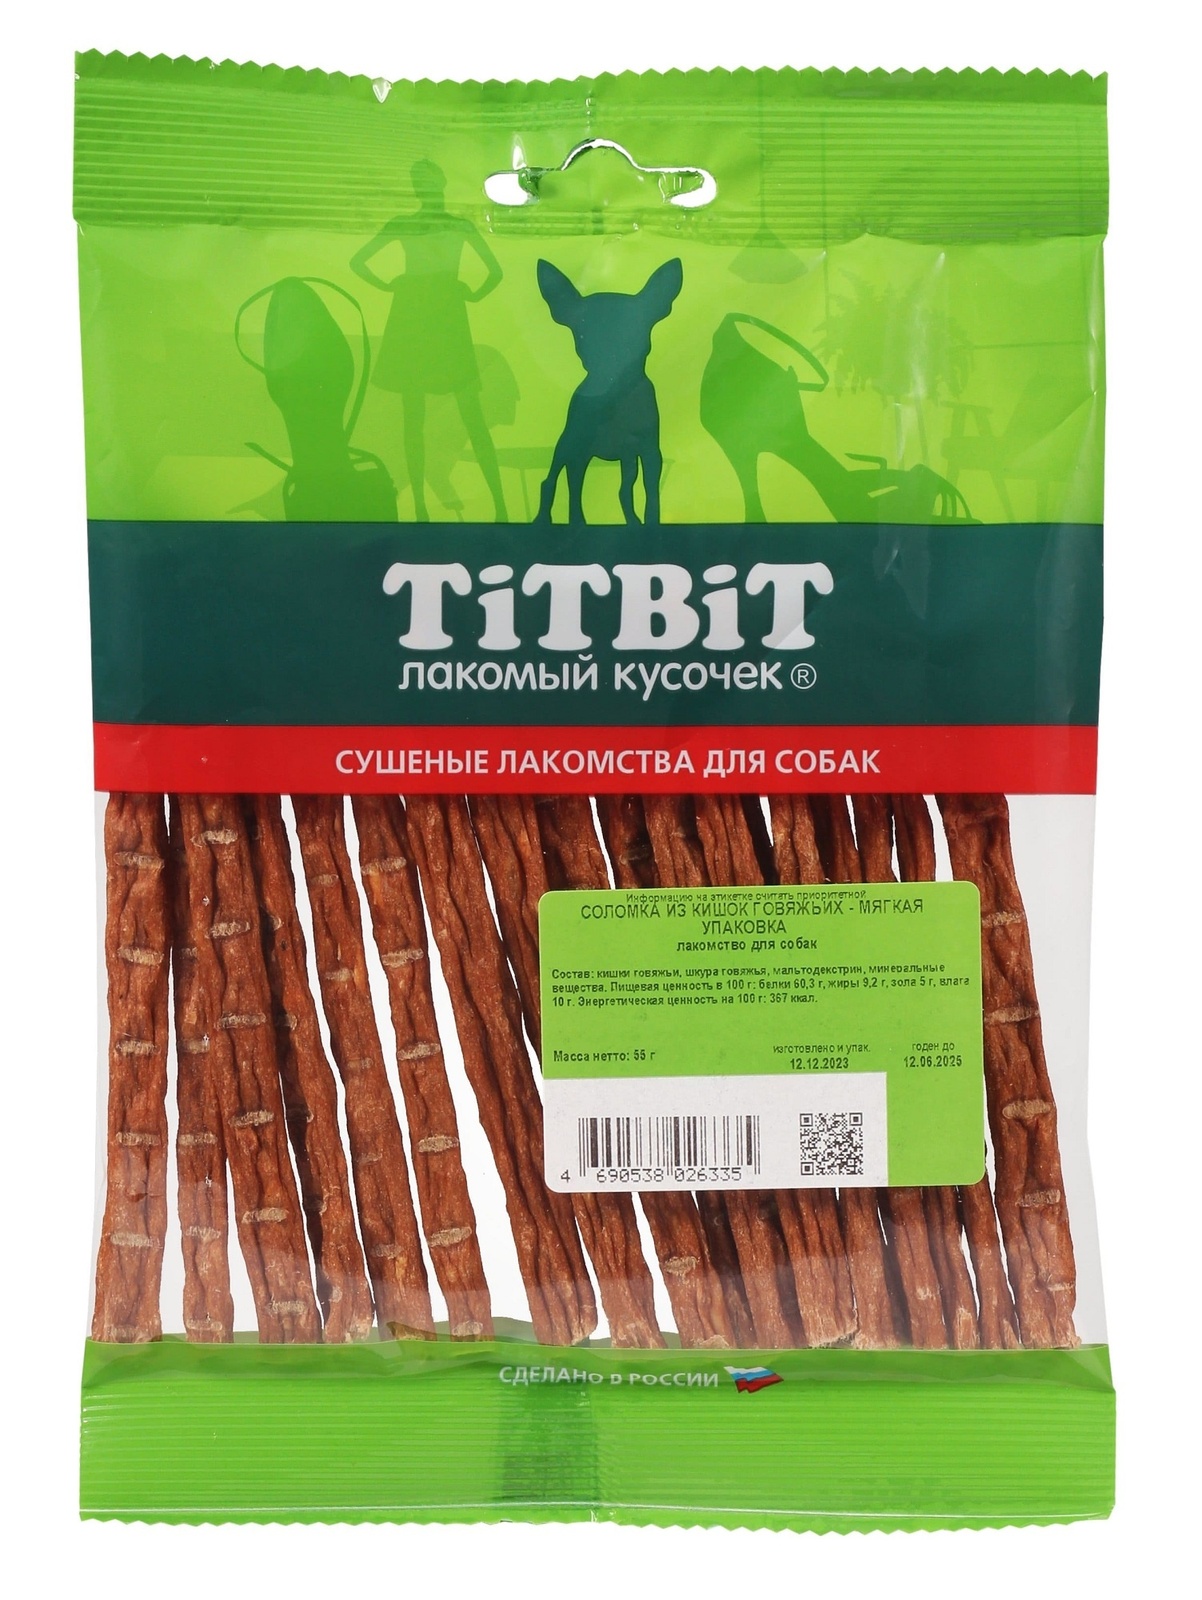 TiTBiT соломка из кишок говяжьих - мягкая упаковка (50 г)